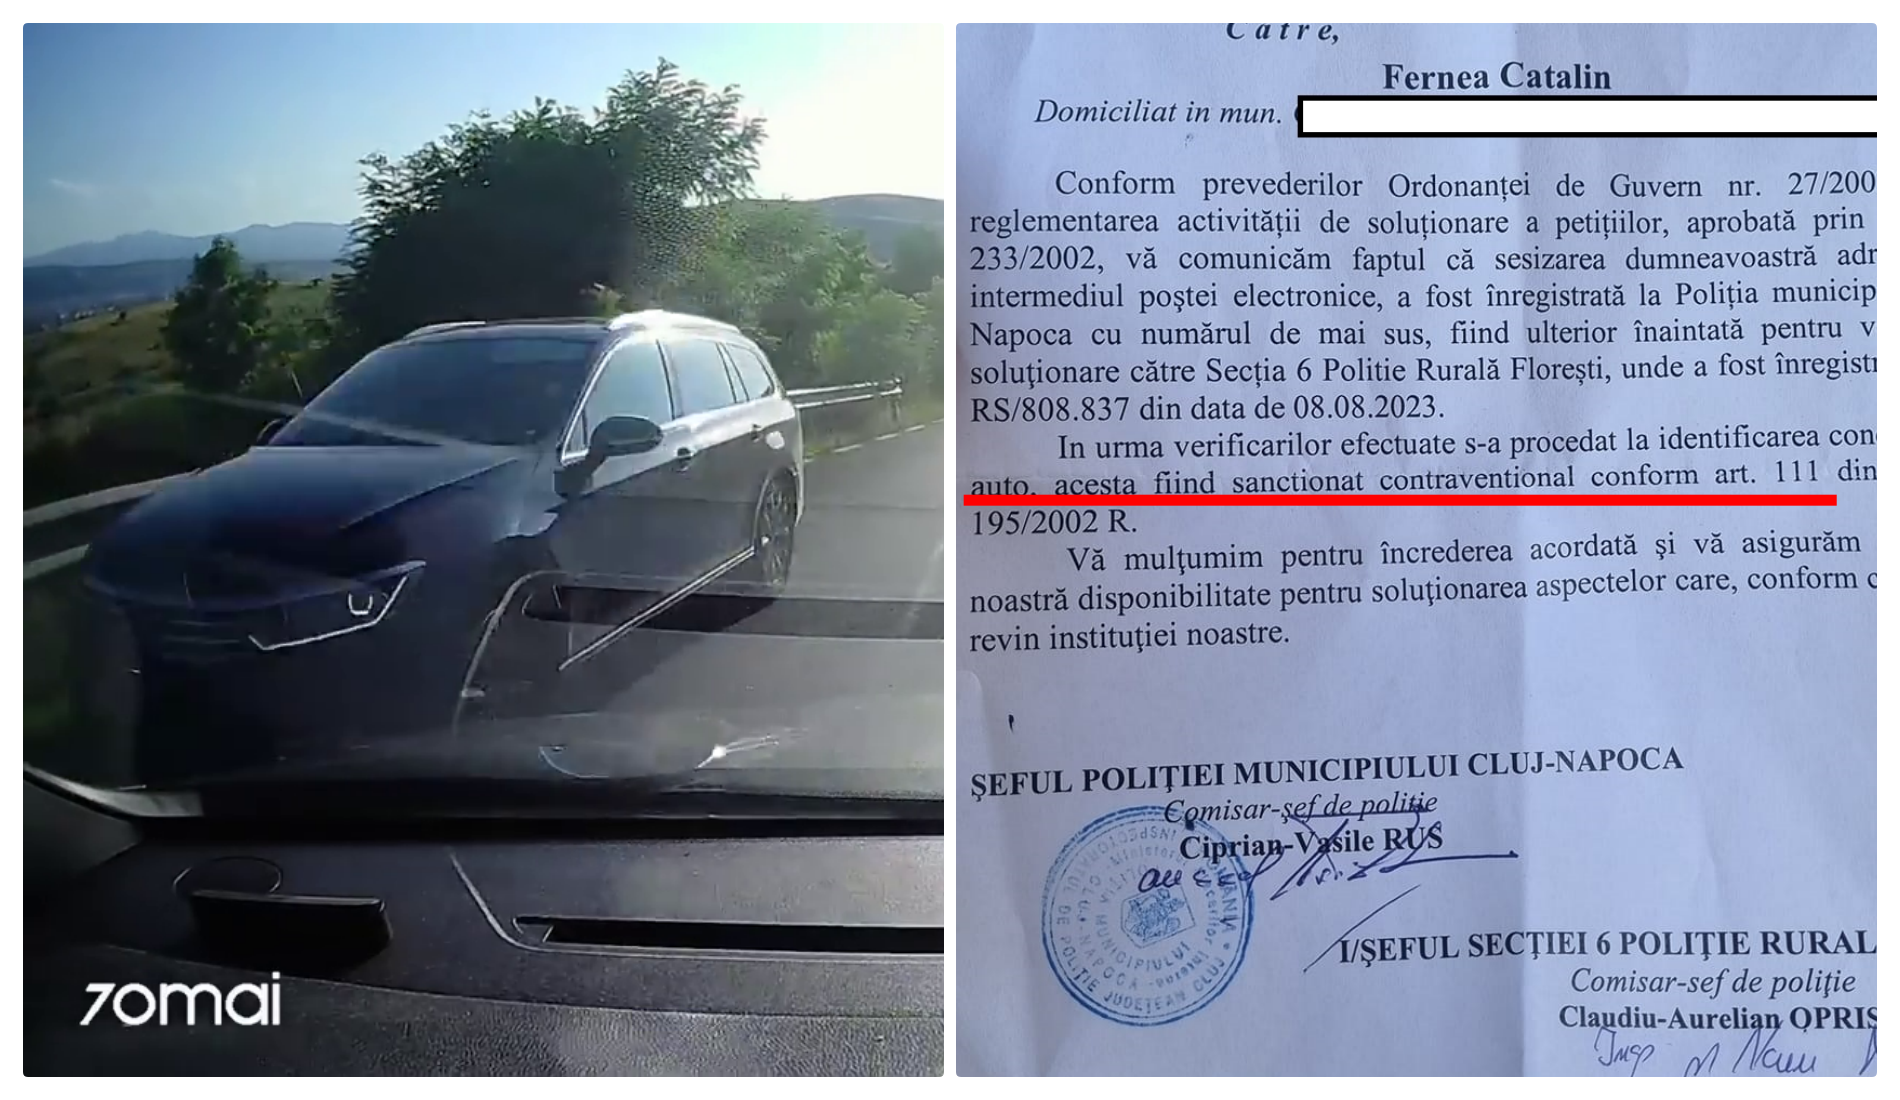 Felicitări Poliției! Clujean pe contrasens, amendat pe baza unei filmări cu camera de pe bord - VIDEO